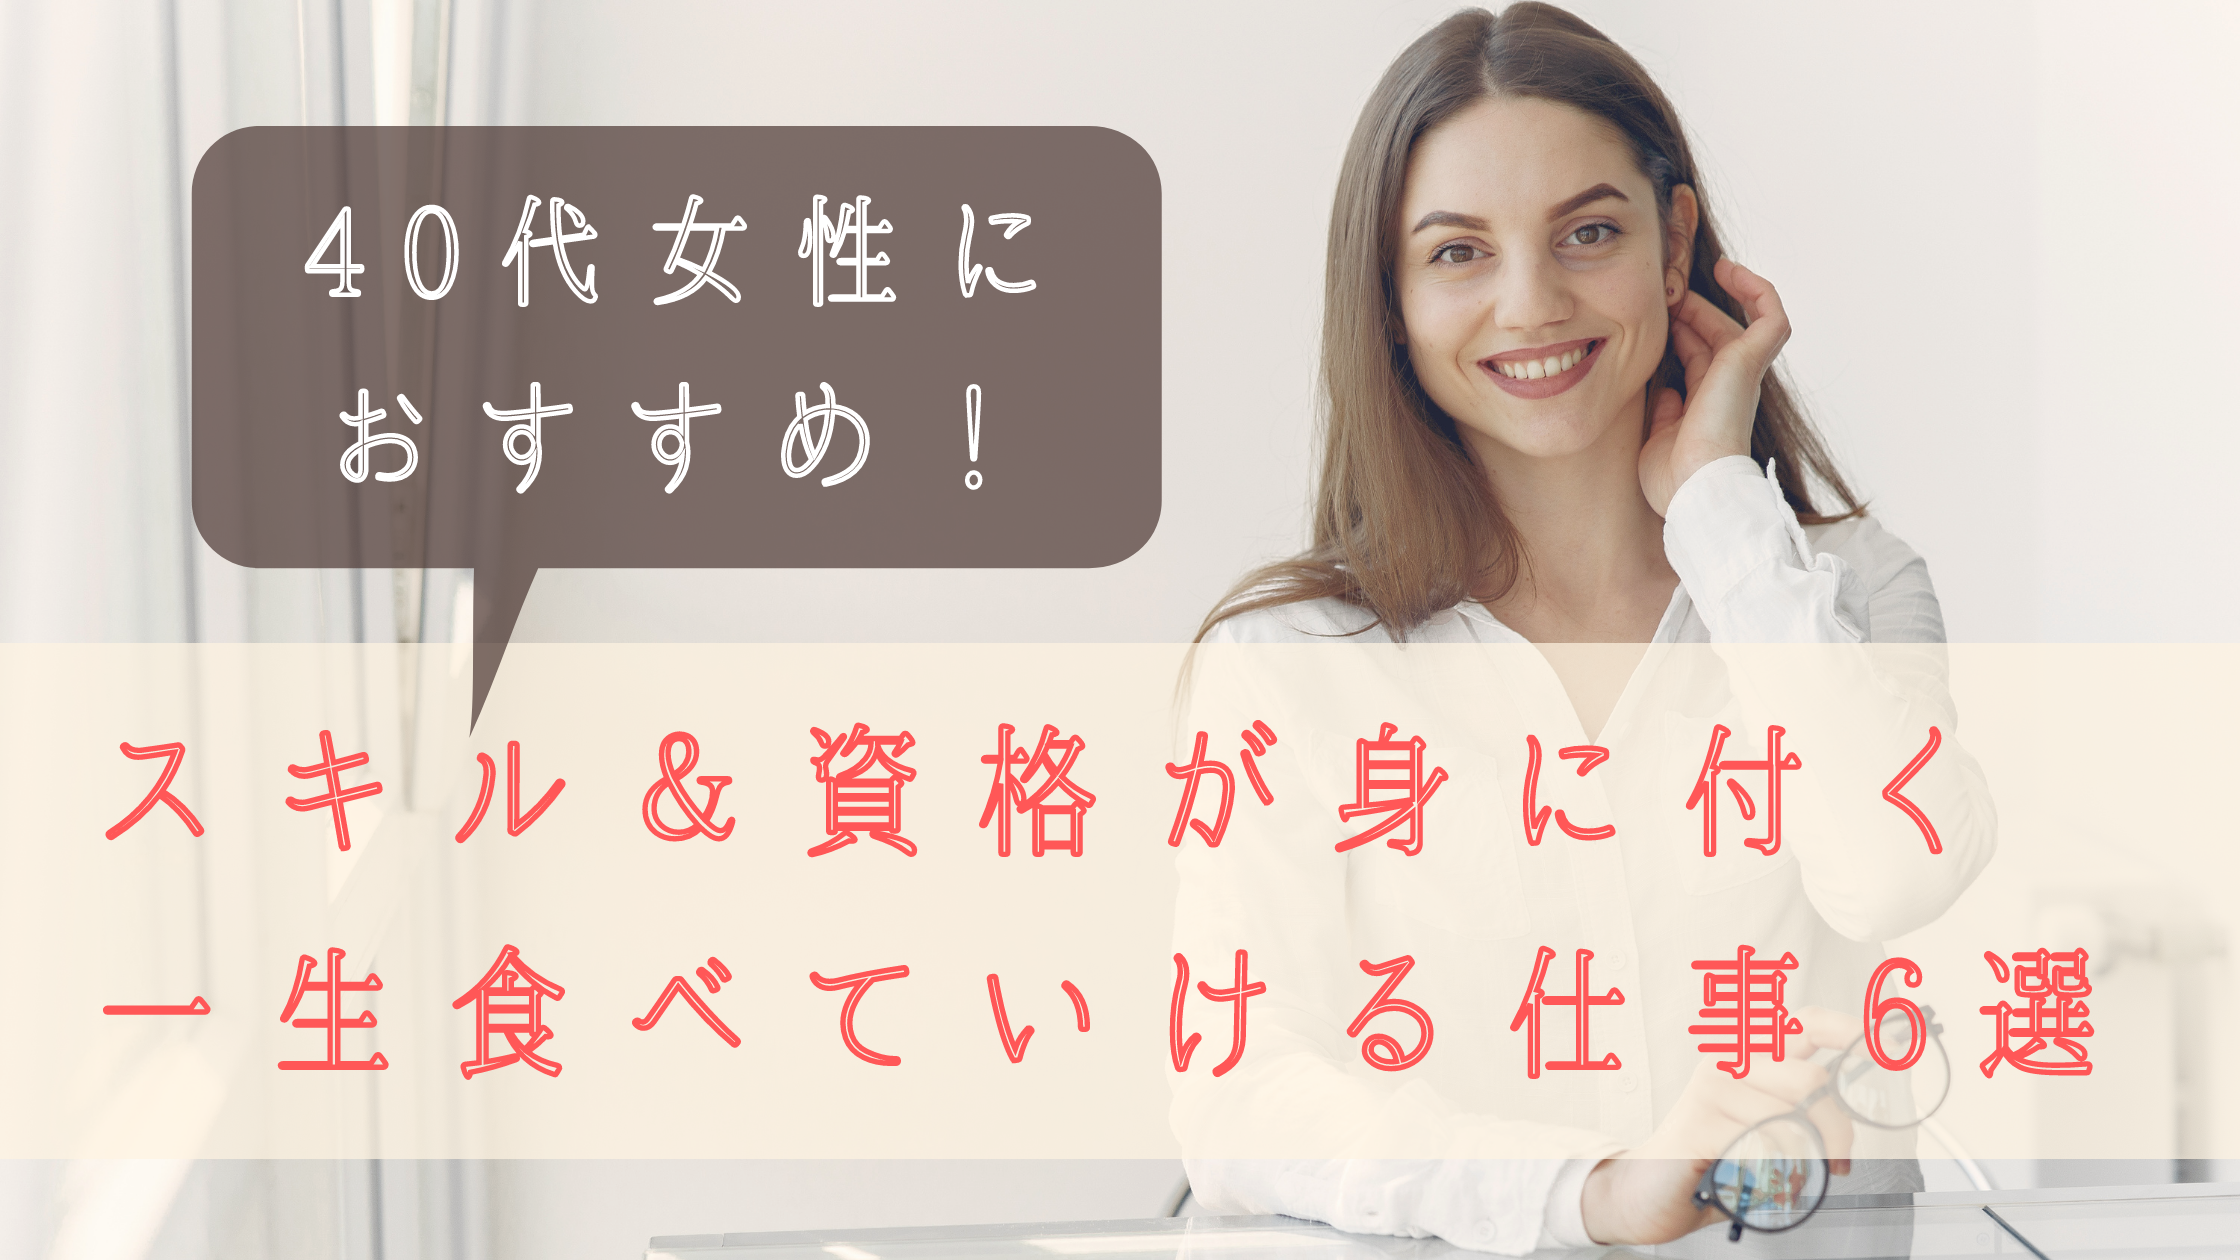 女性が40代からでも挑戦できる 一生食べていける仕事6選 日本語教師キャリア マガジン 旧称 日本語情報バンク